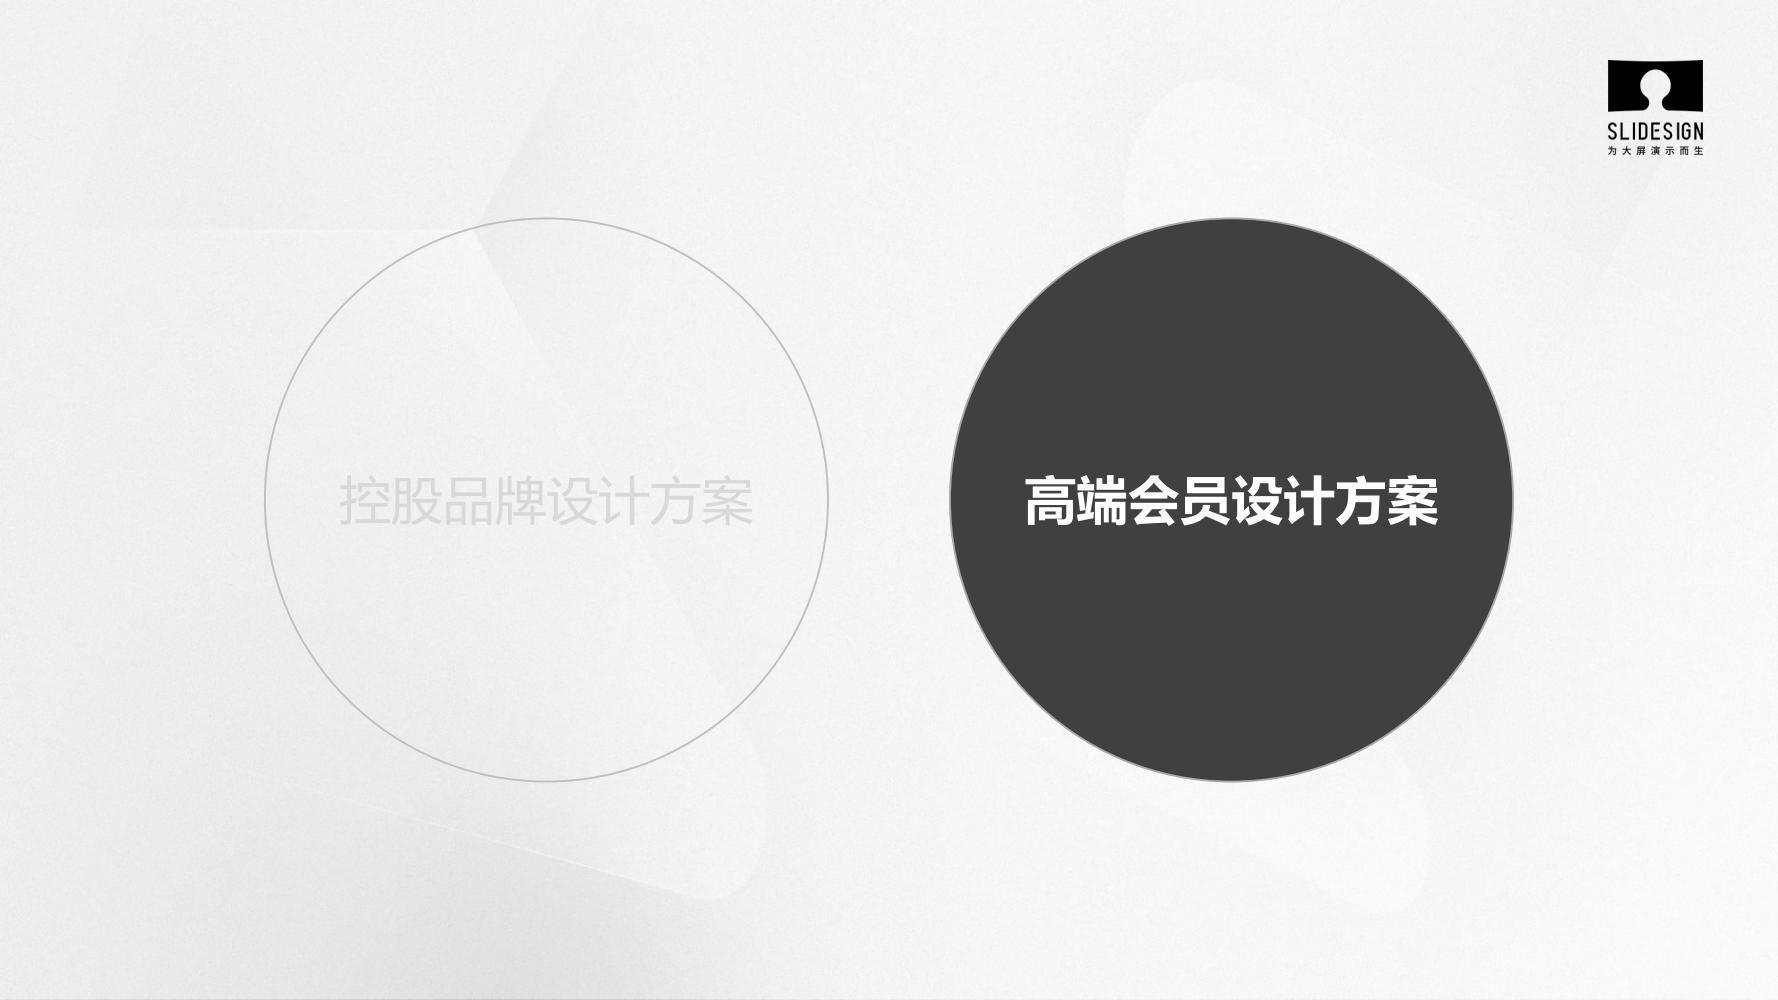 【夺幕 SLIDESIGN】星河控股集团品牌设计方案_34.jpg